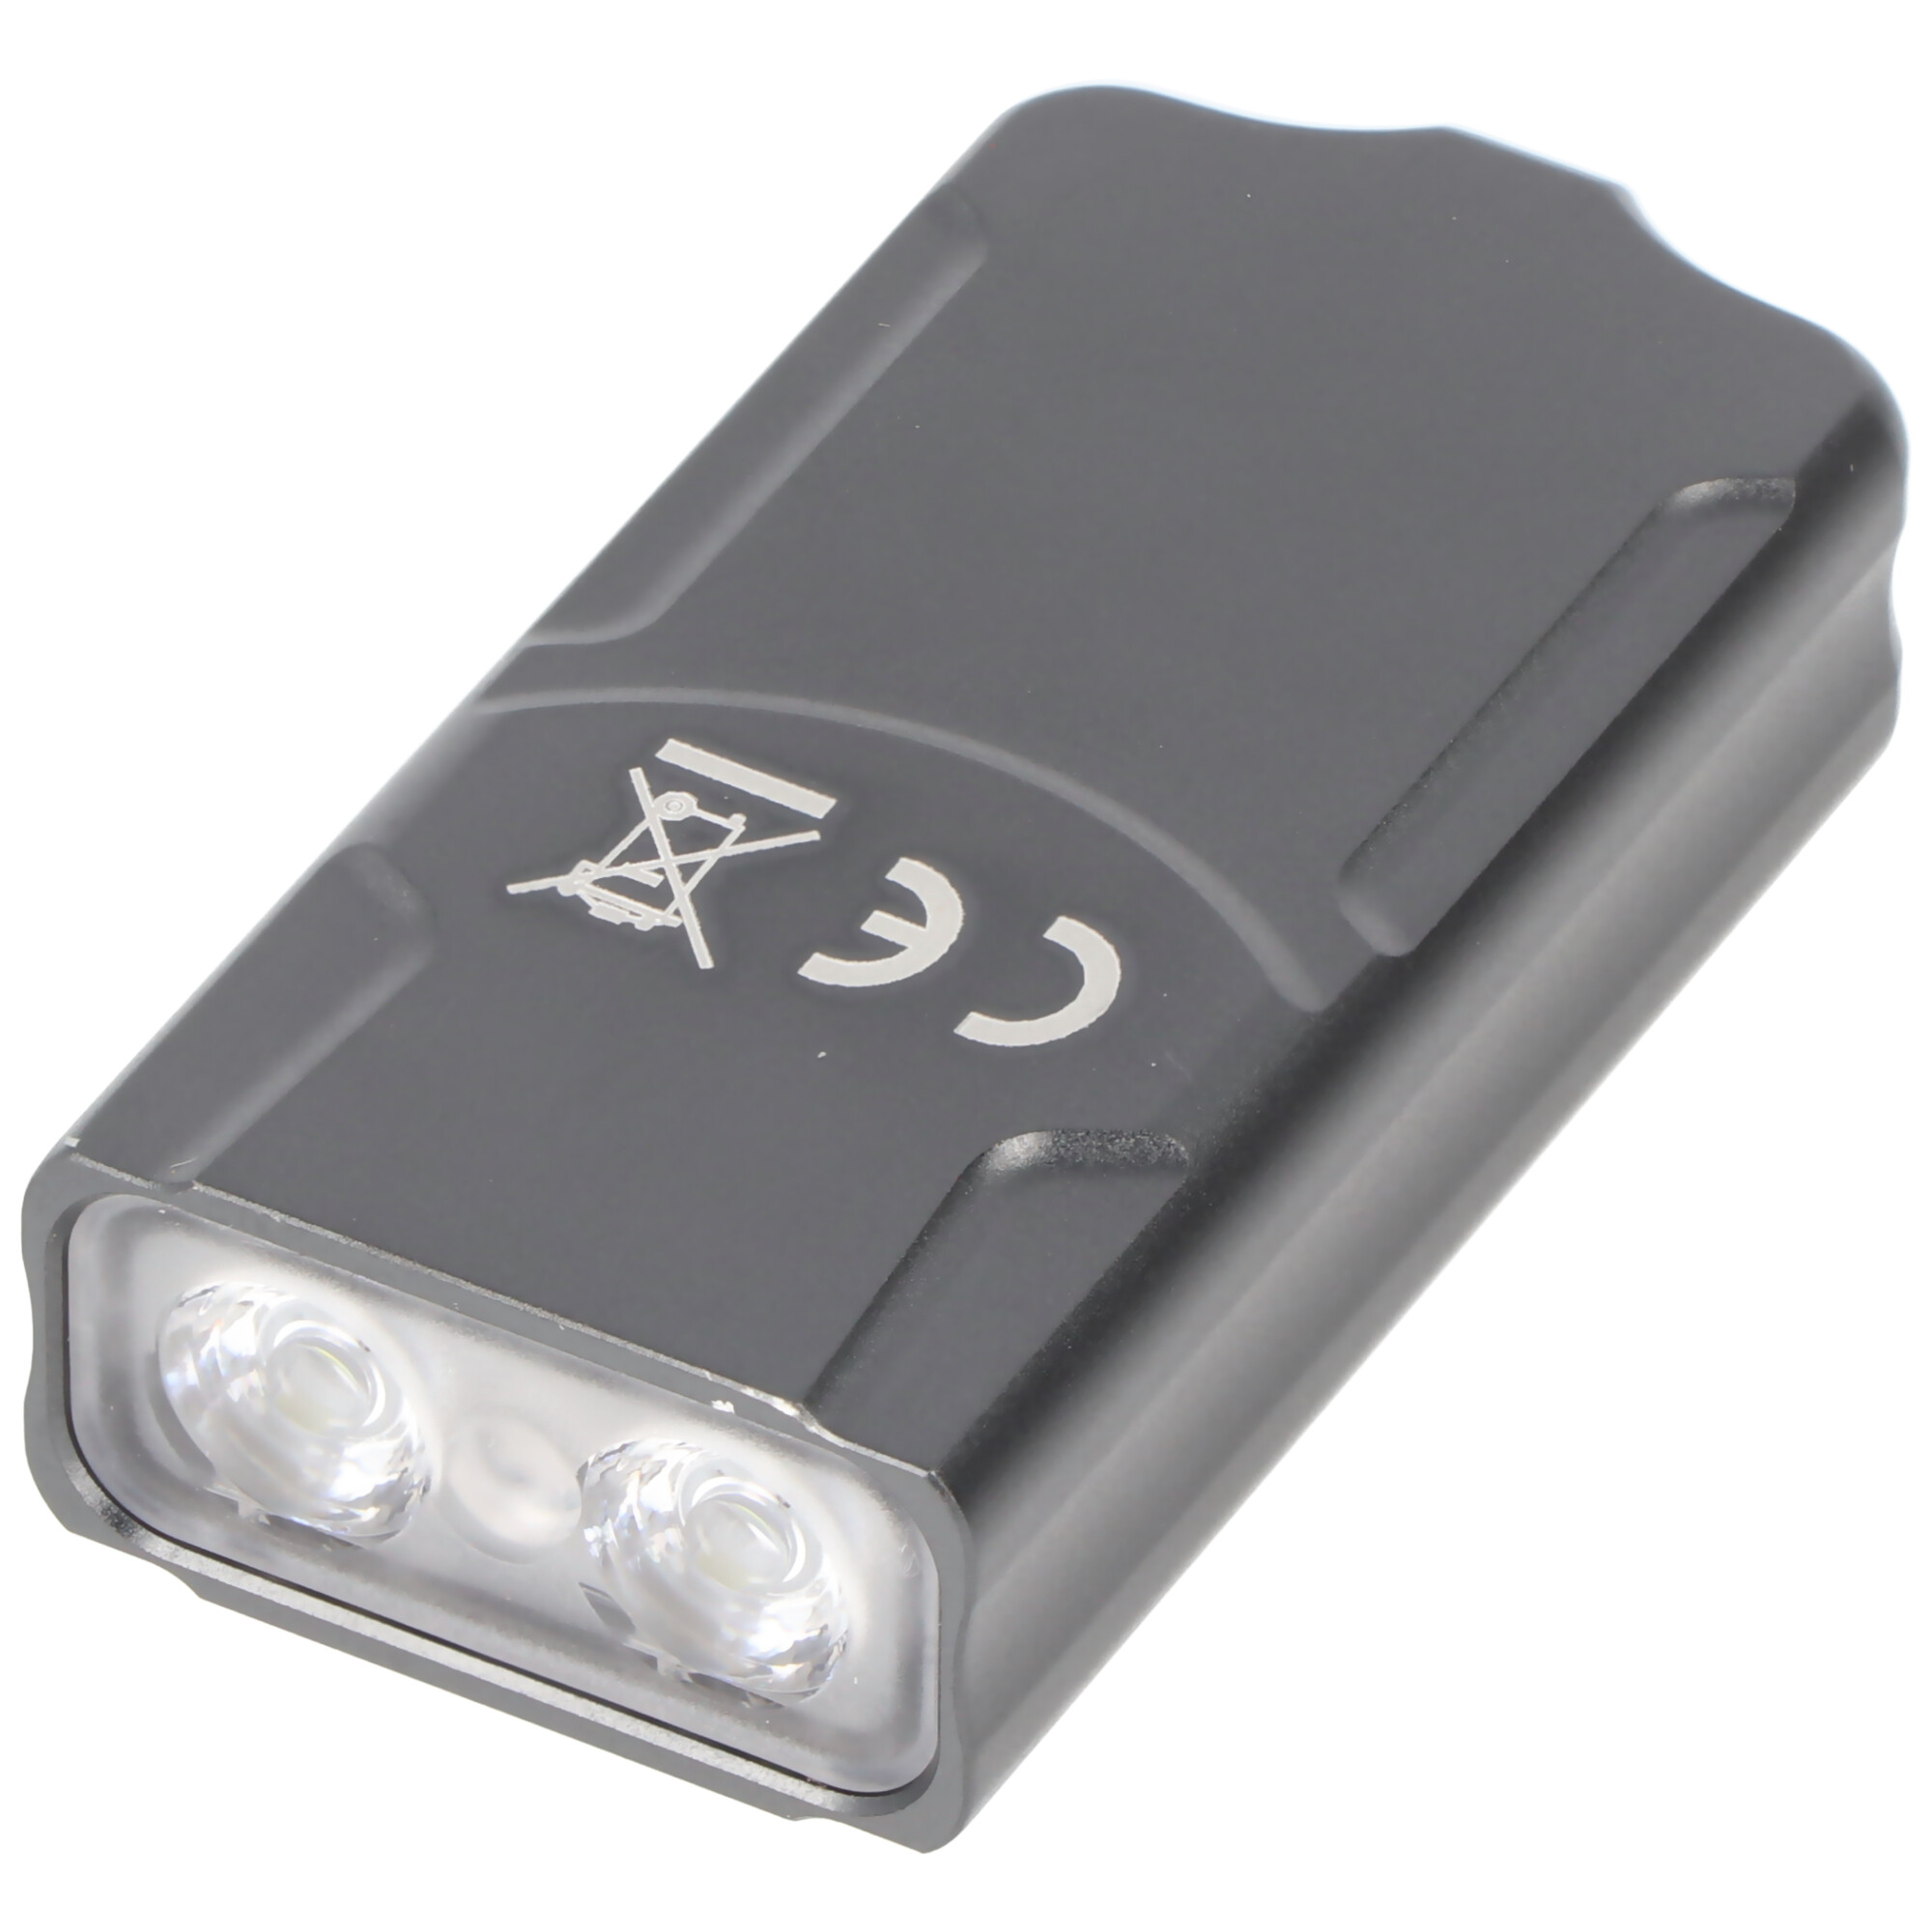 Fenix E03R V2.0 LED Schlüsselbundleuchte, max. 500 Lumen, mit Positionslicht in rot und grün, ultraleicht und kompakt, eingebauter 400mAh Li-Polymer Akku